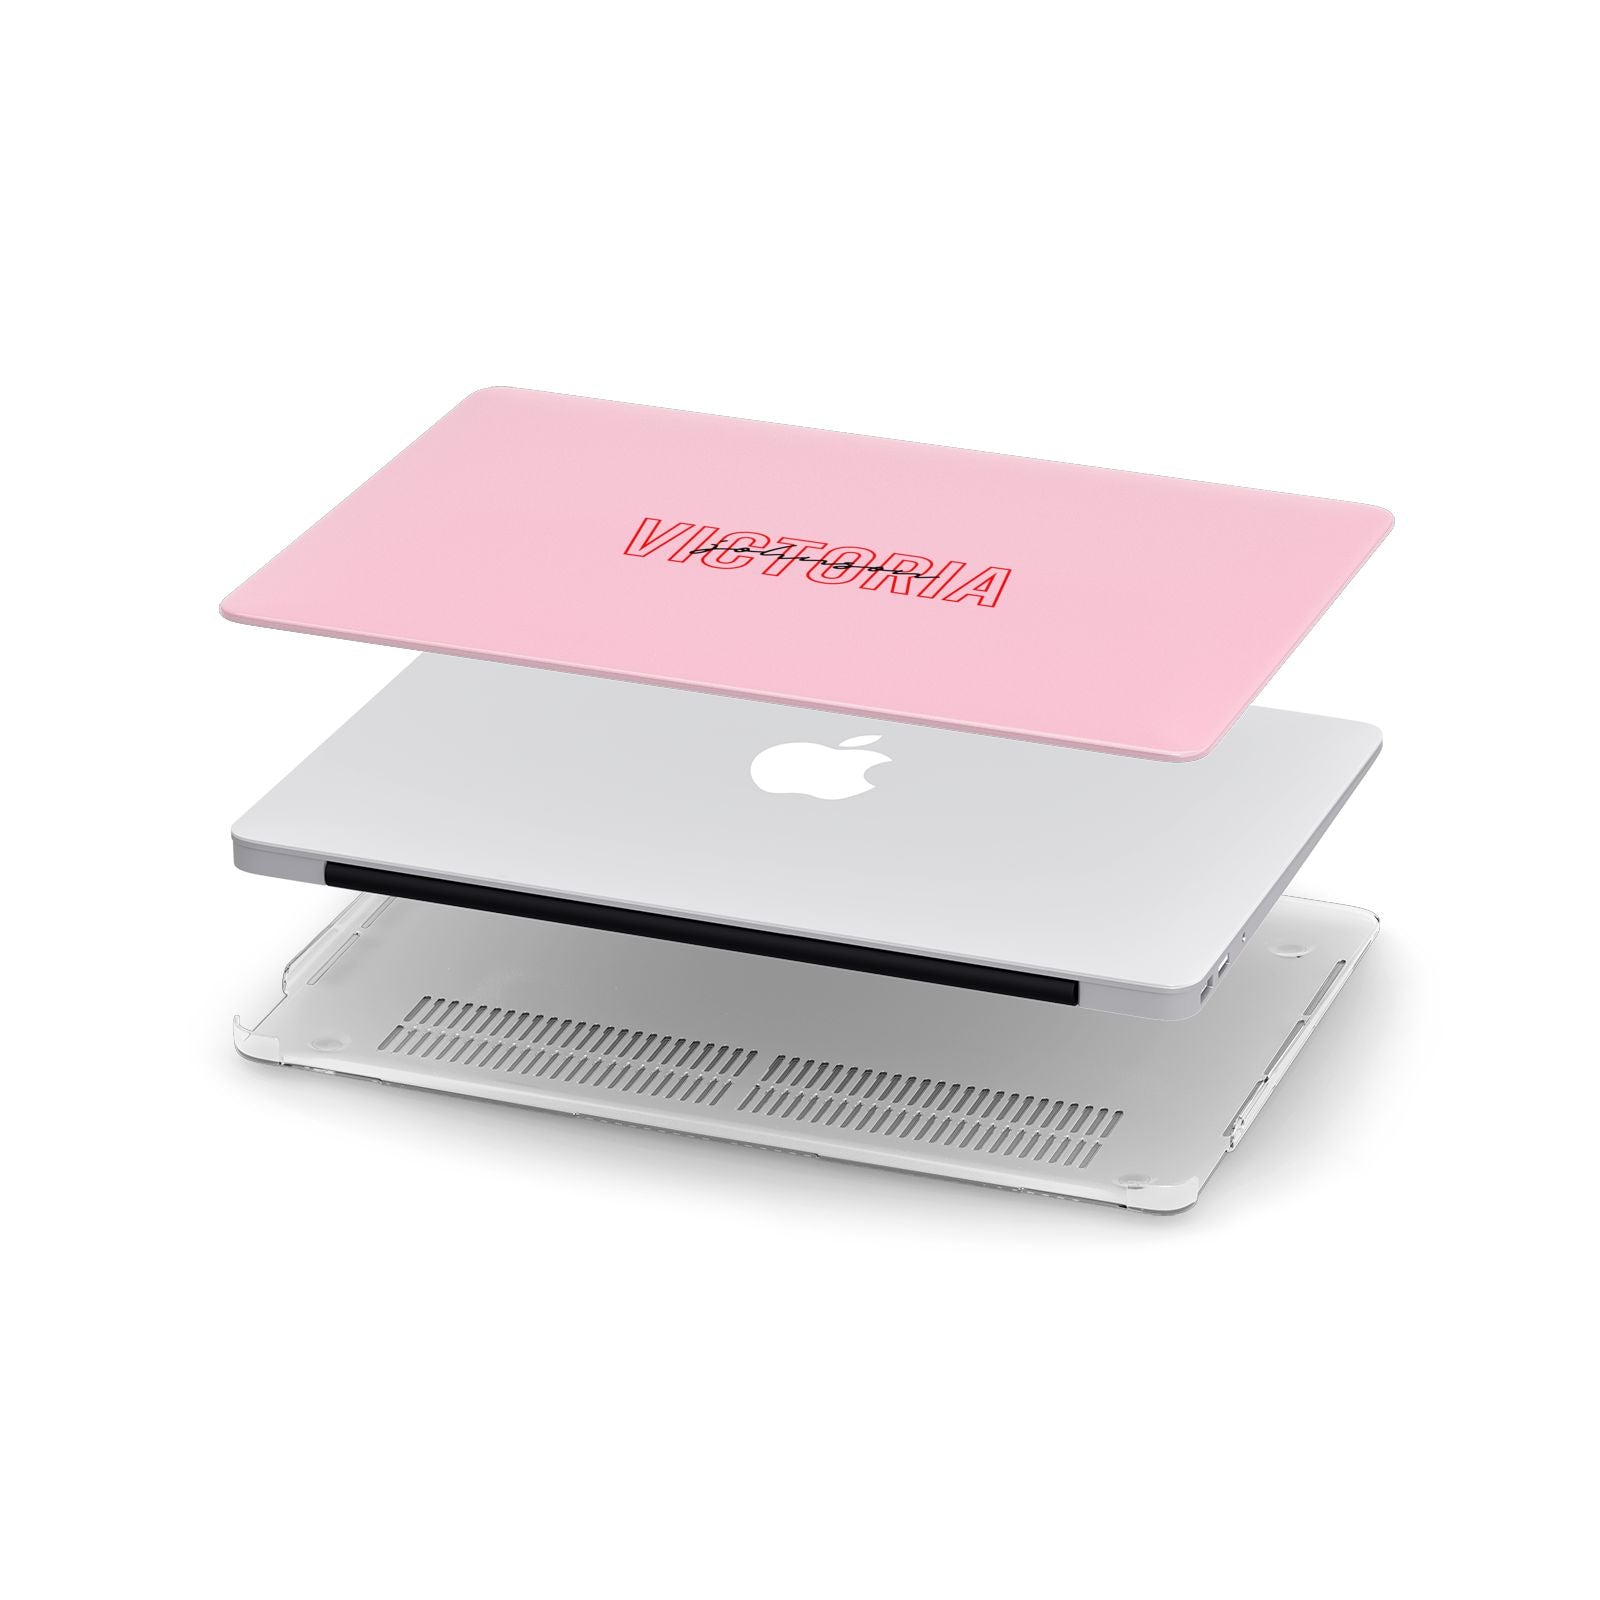 Personalised Pink Red Names Apple MacBook Case in Detail